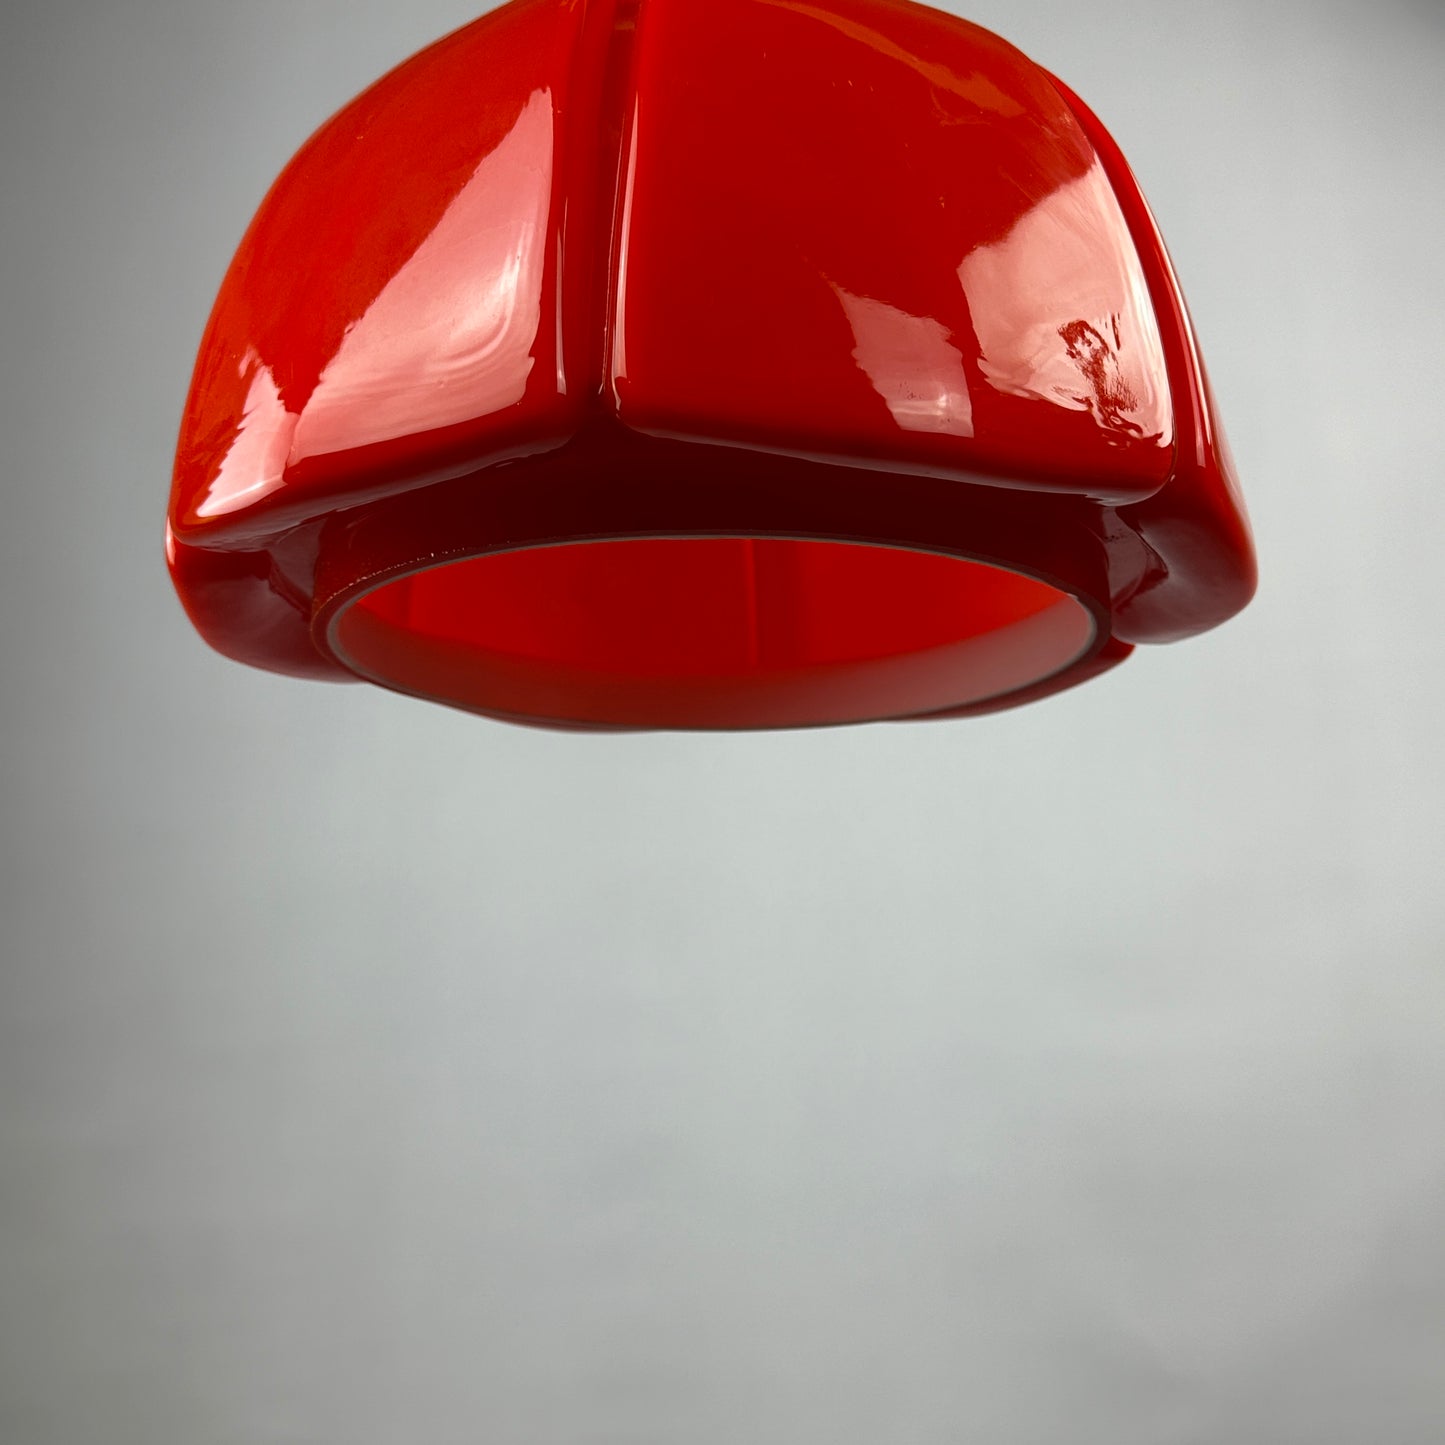 Red glass flower shaped pendant light from Glashütte Limburg